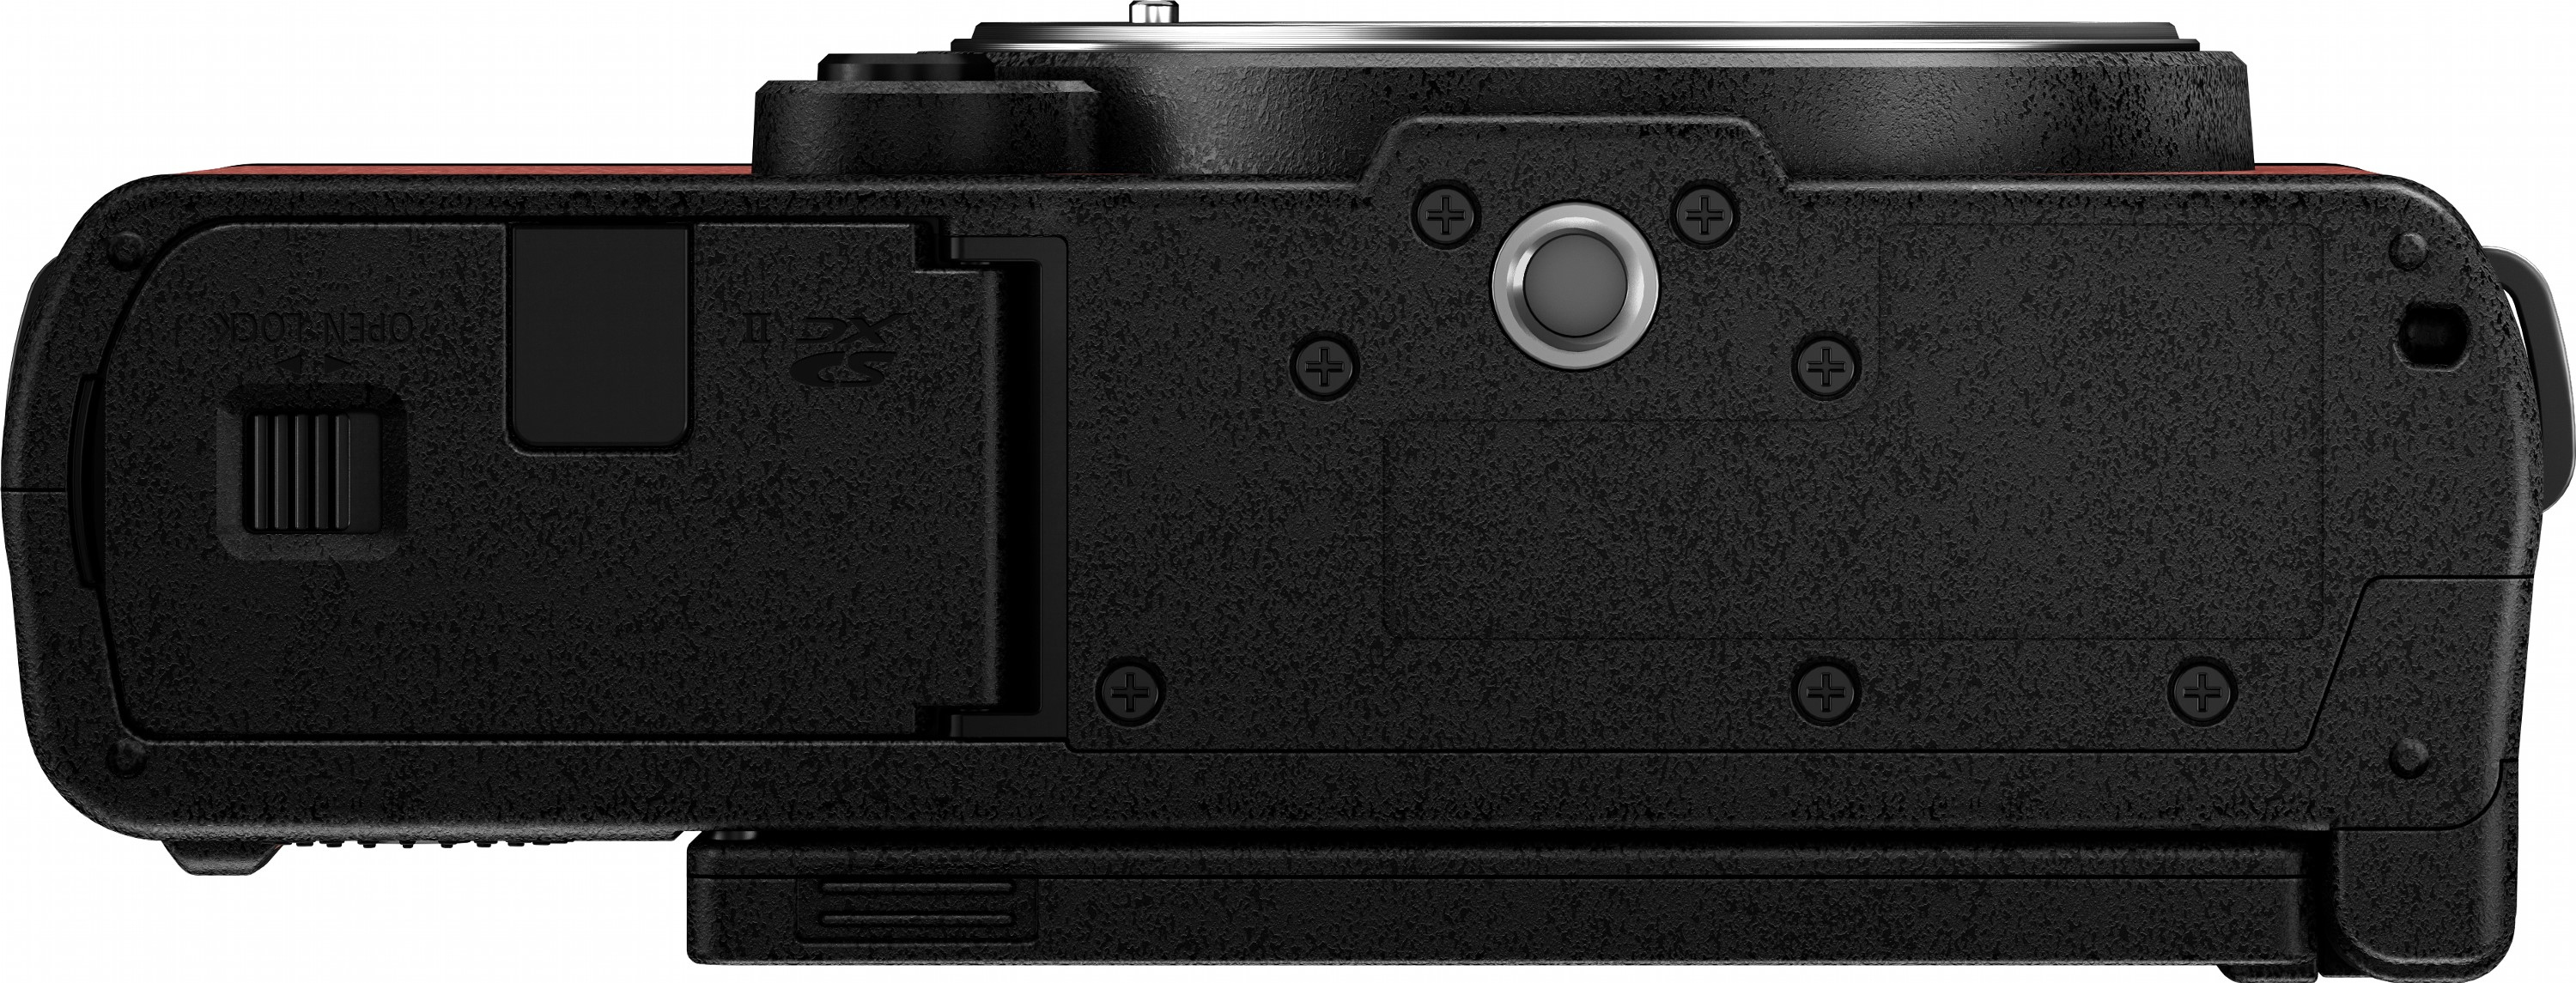 Фотоапарат Panasonic Lumix DC-S9 + 20-60mm f/3.5-5.6 Crimson Red (DC-S9KE-R)фото10